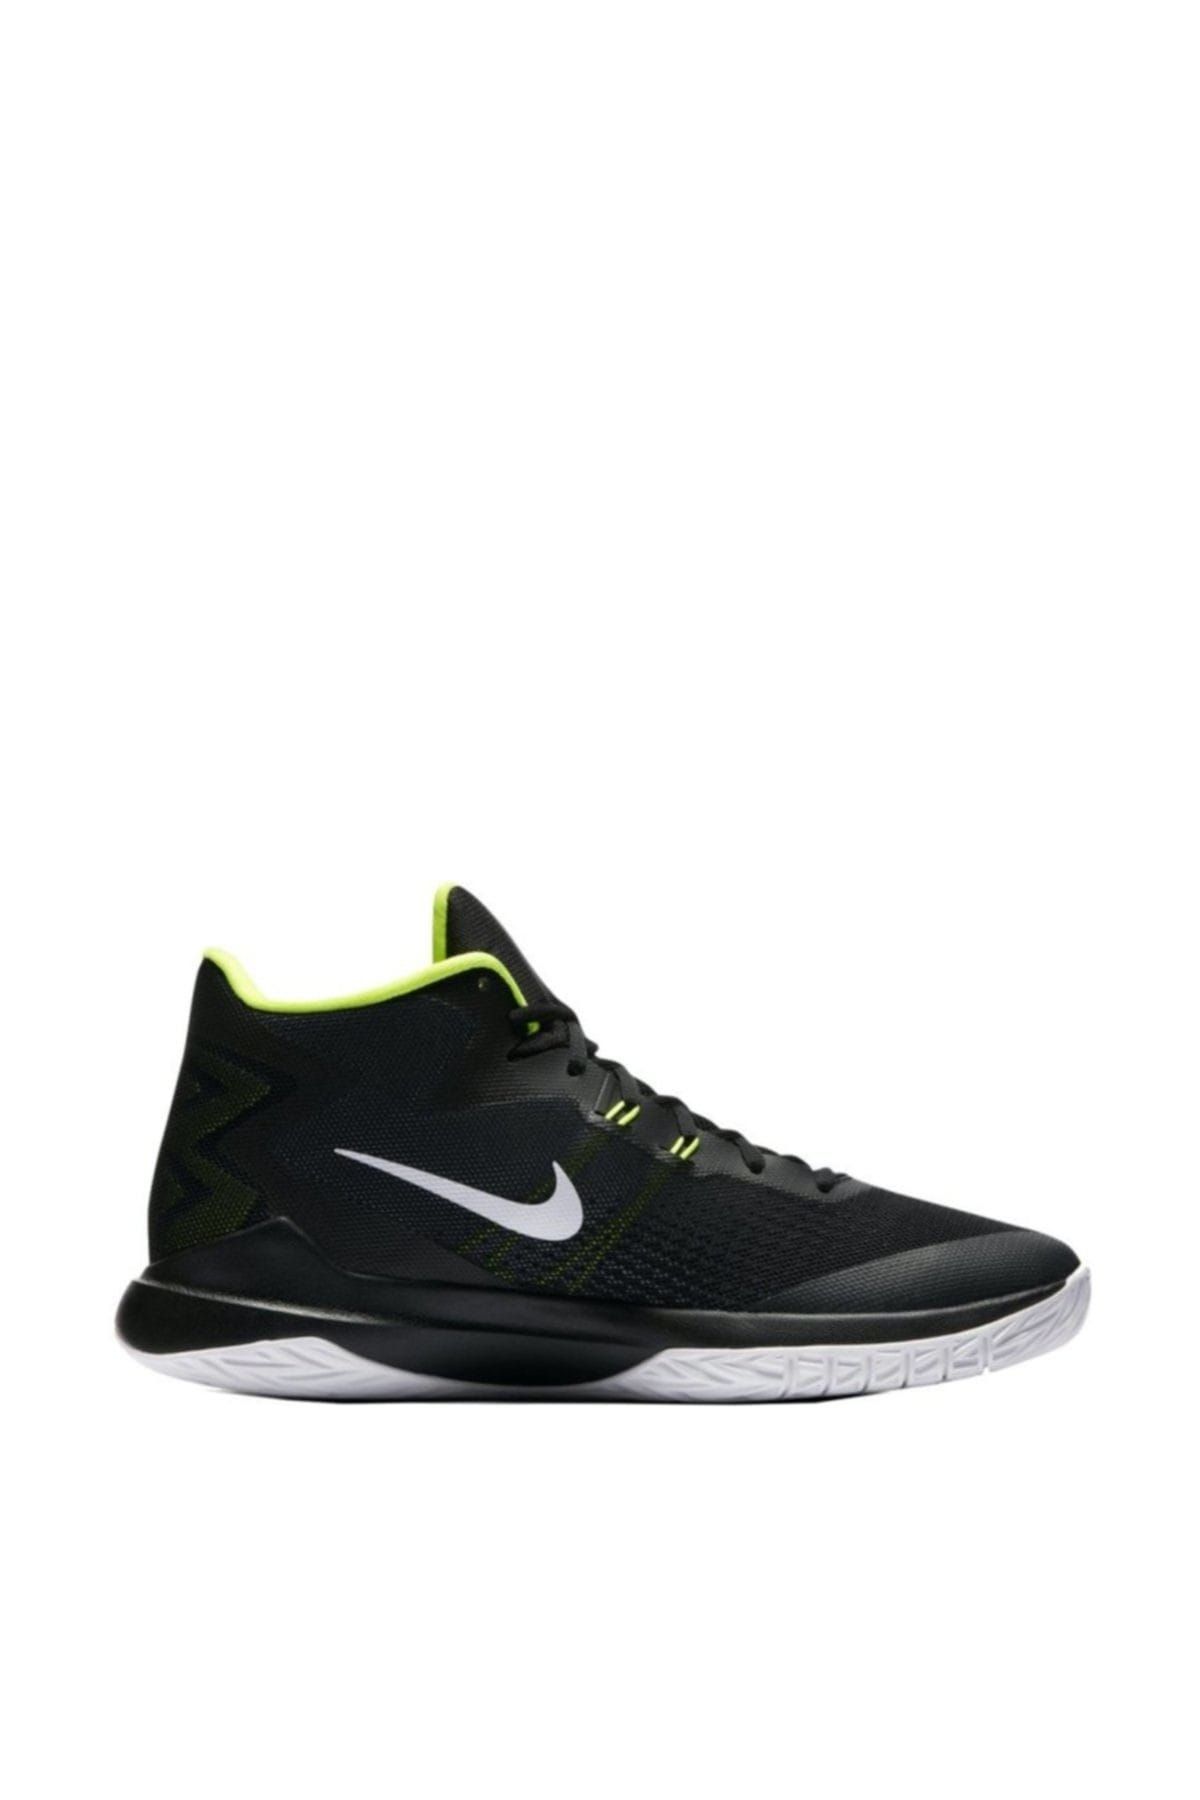 Nike Zoom Evidence Basketbol Ayakkabısı 852464-006